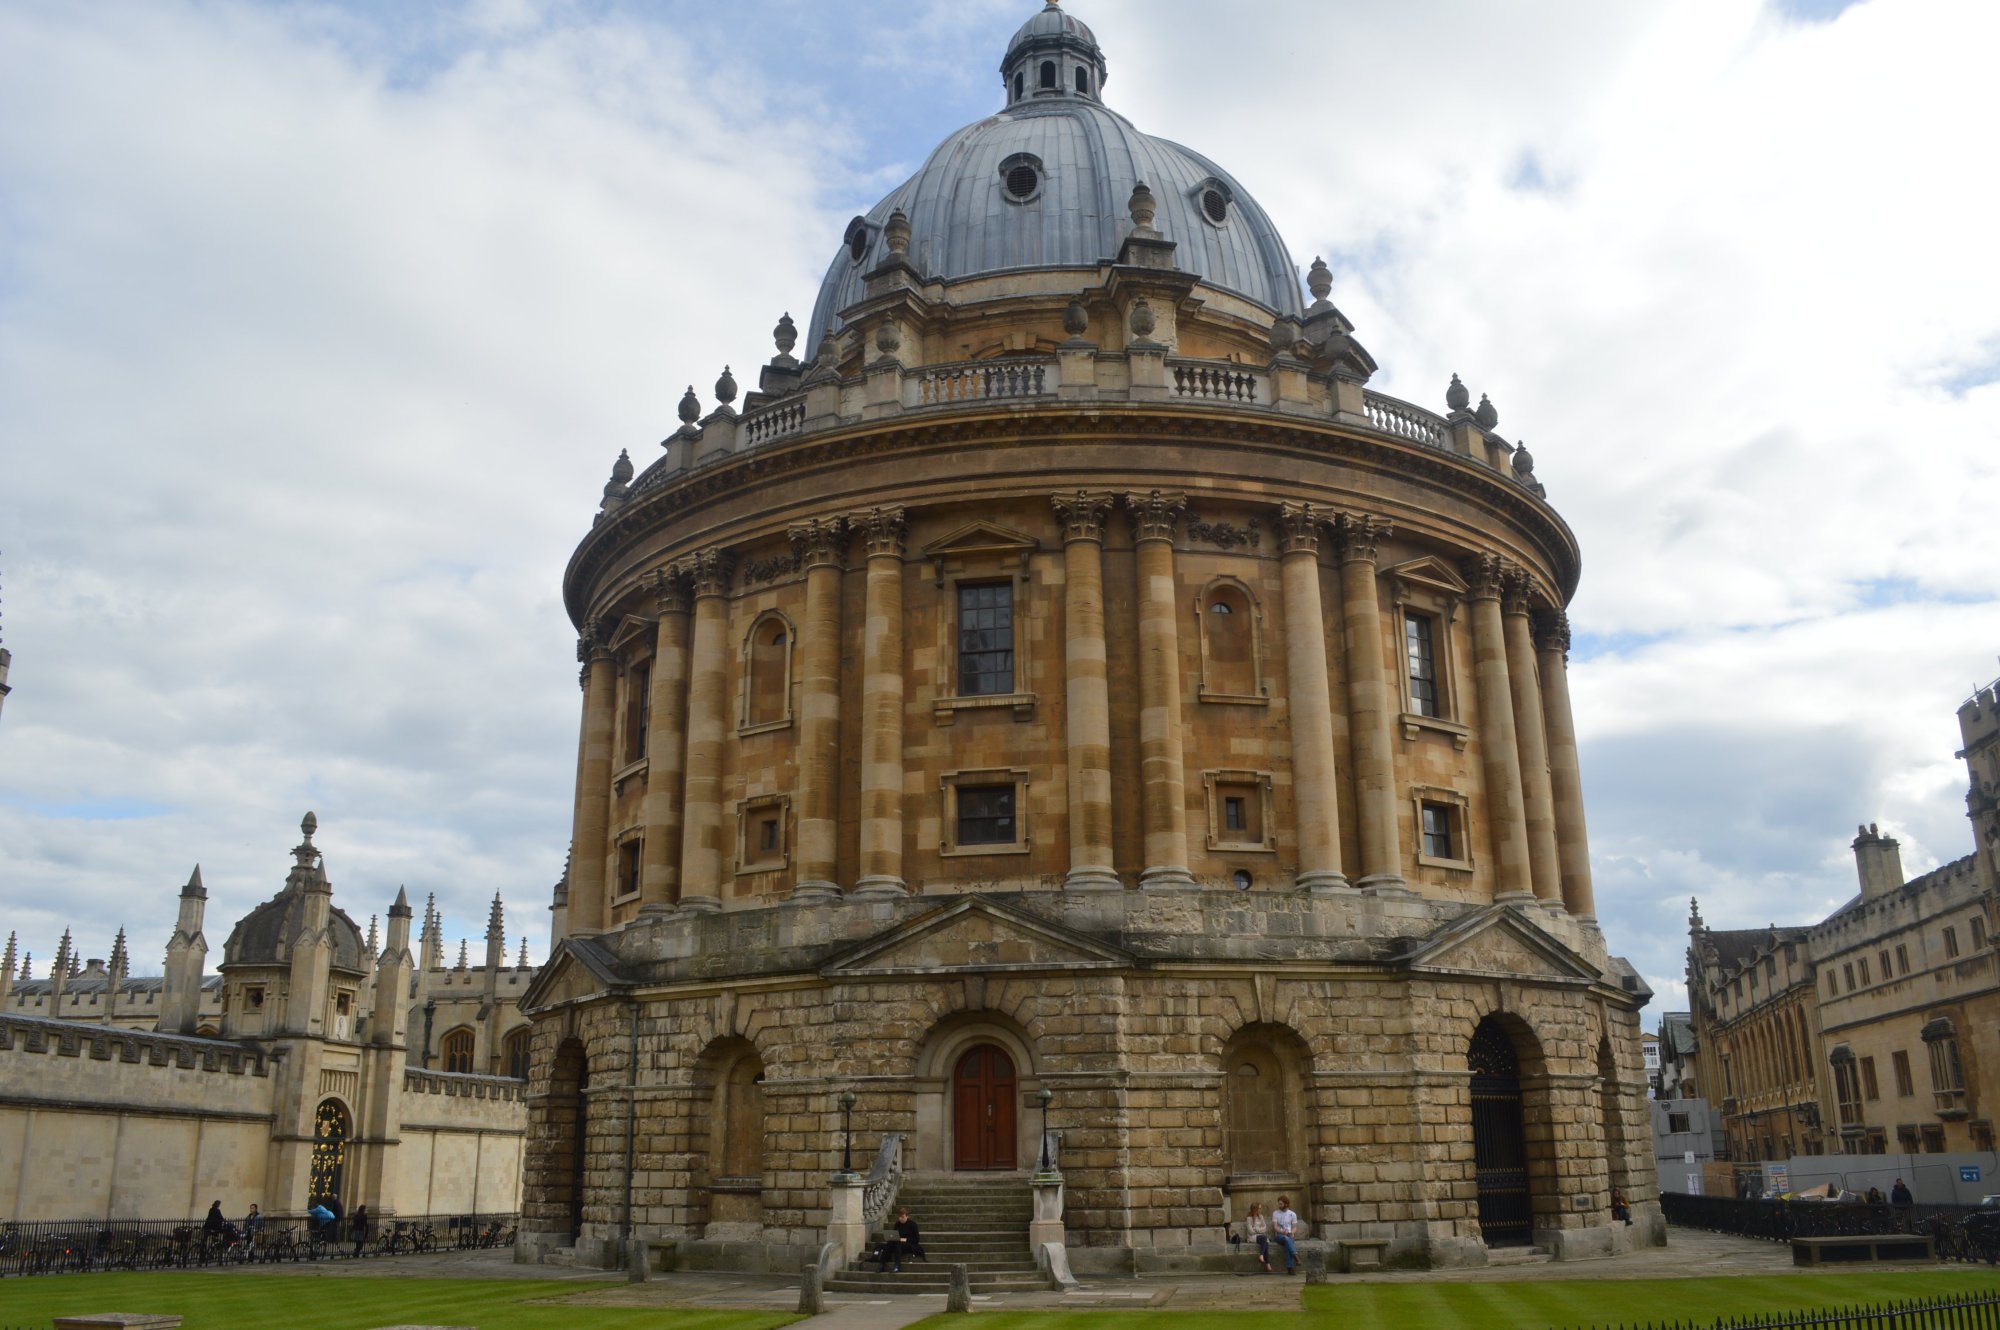 Camera, Oxford